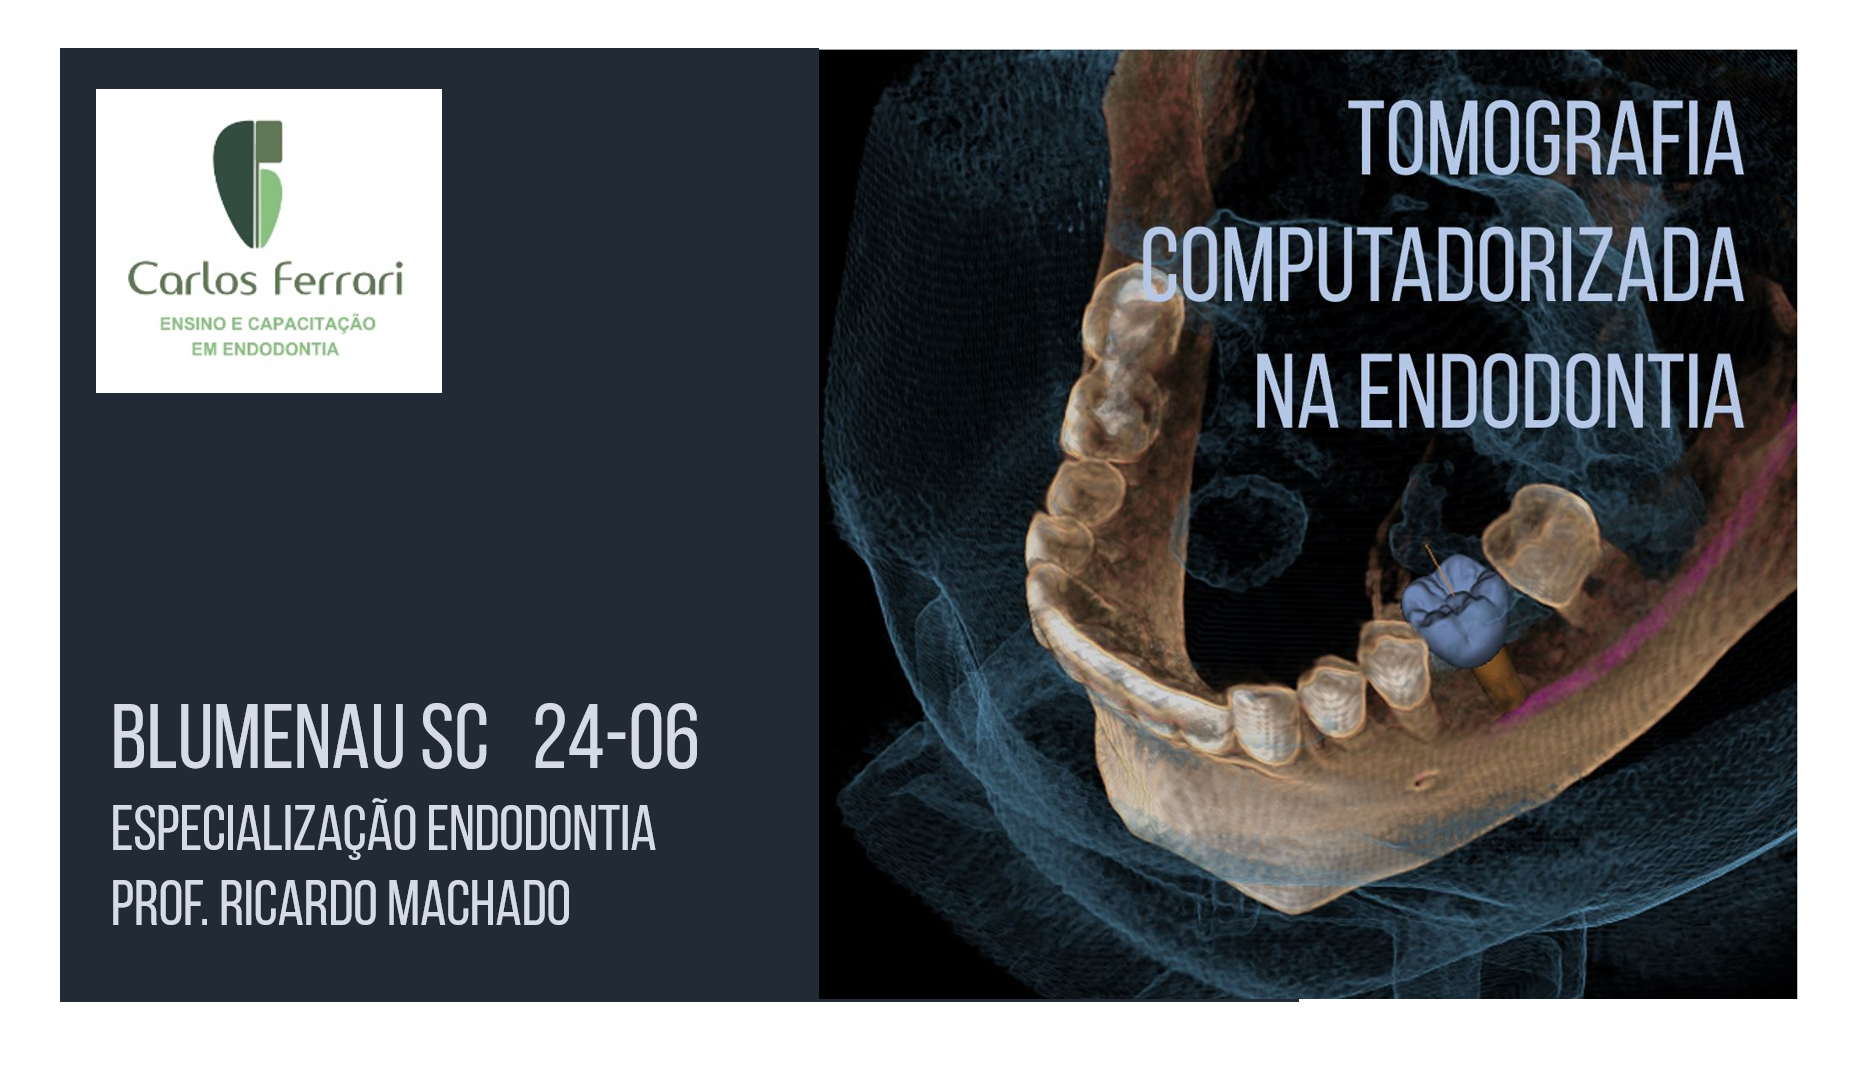 您目前正在查看牙髓病学的断层扫描课程。Blumenau SC.